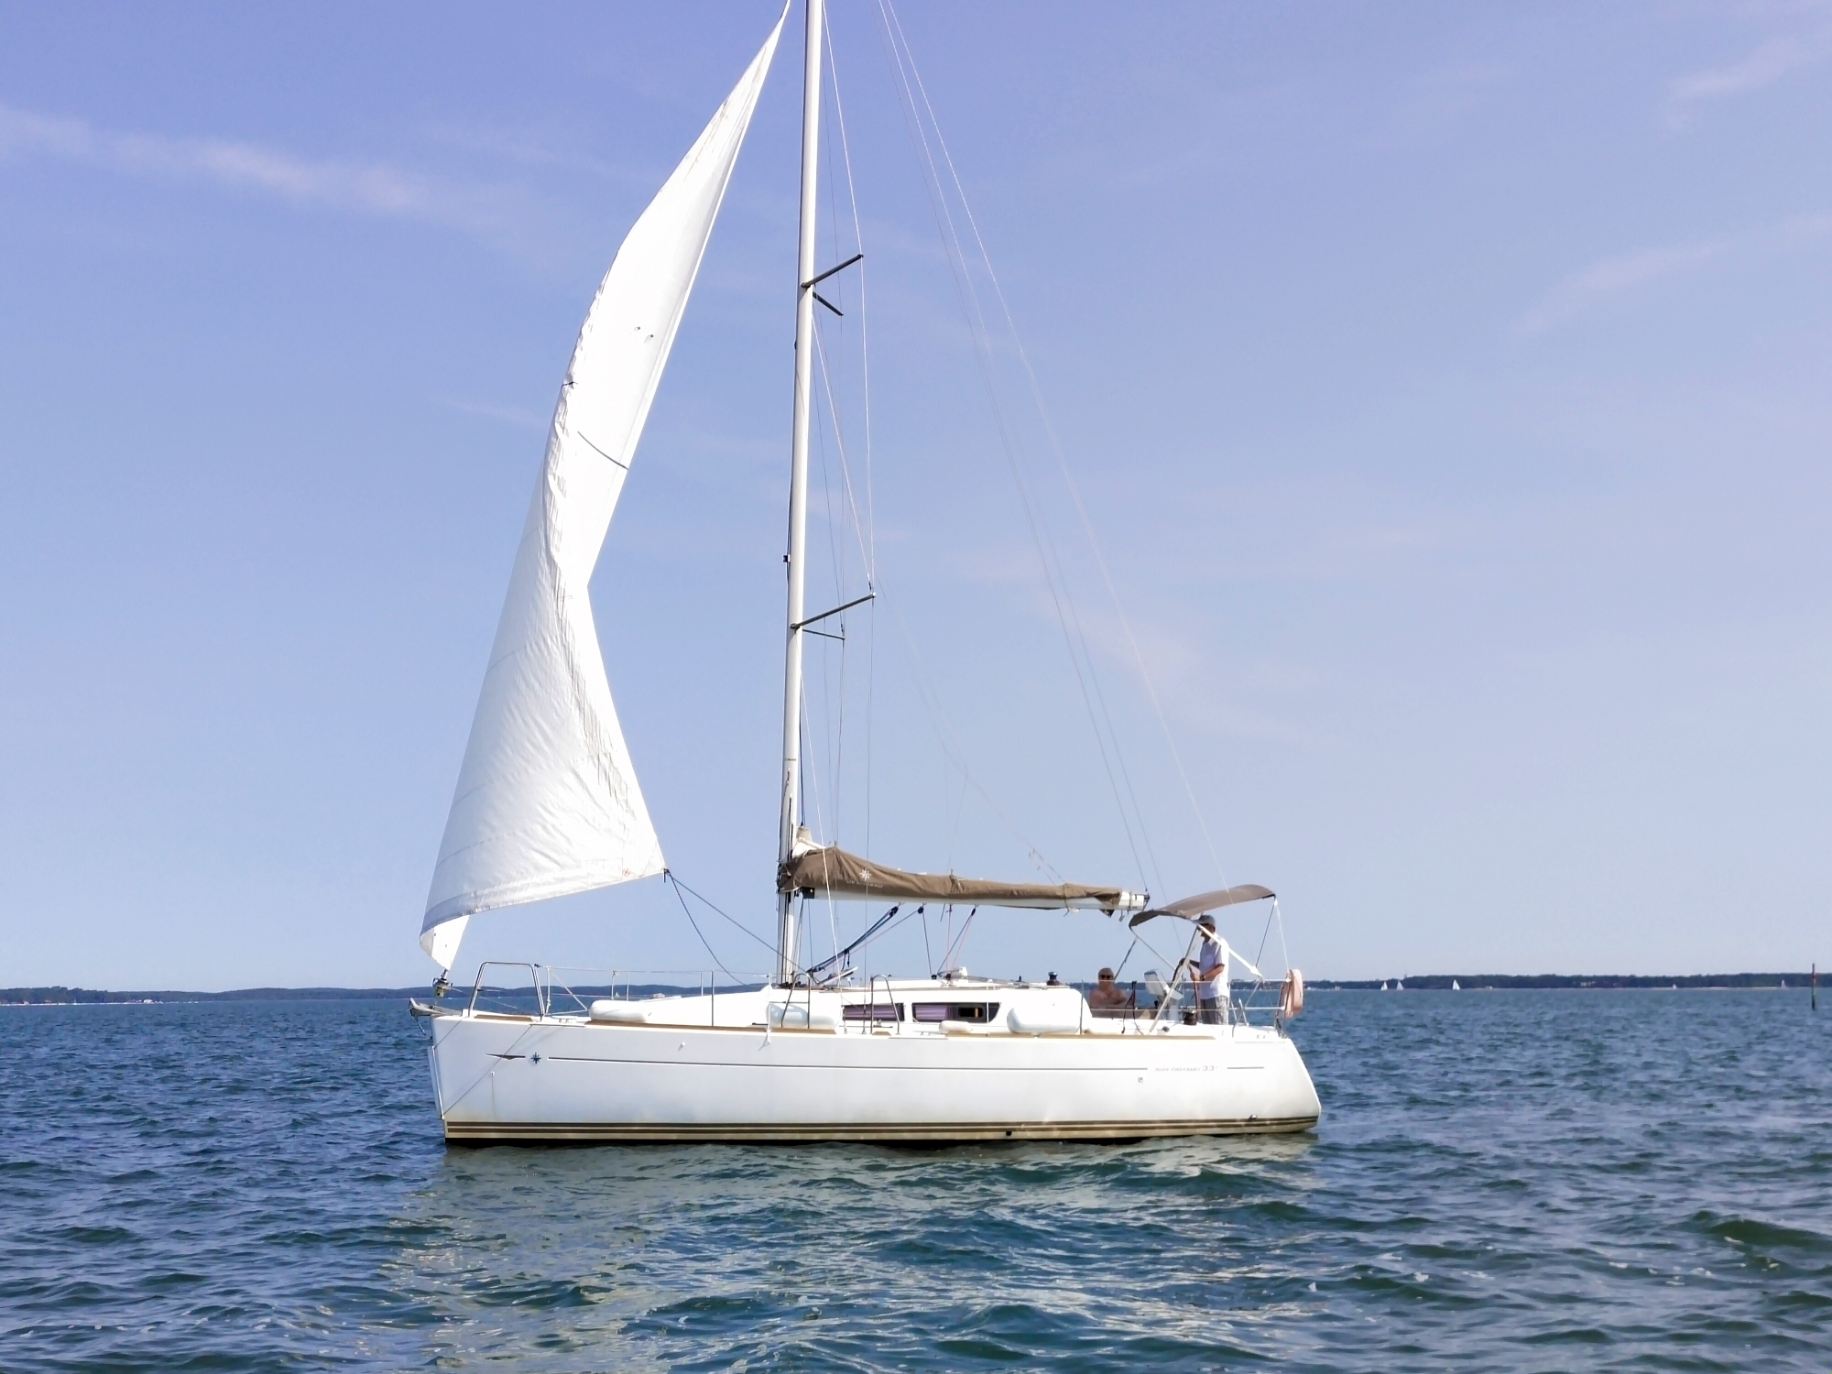 Sun Odyssey 33i - Yacht Charter La Rochelle & Boat hire in France Bay of Biscay La Rochelle La Rochelle 1